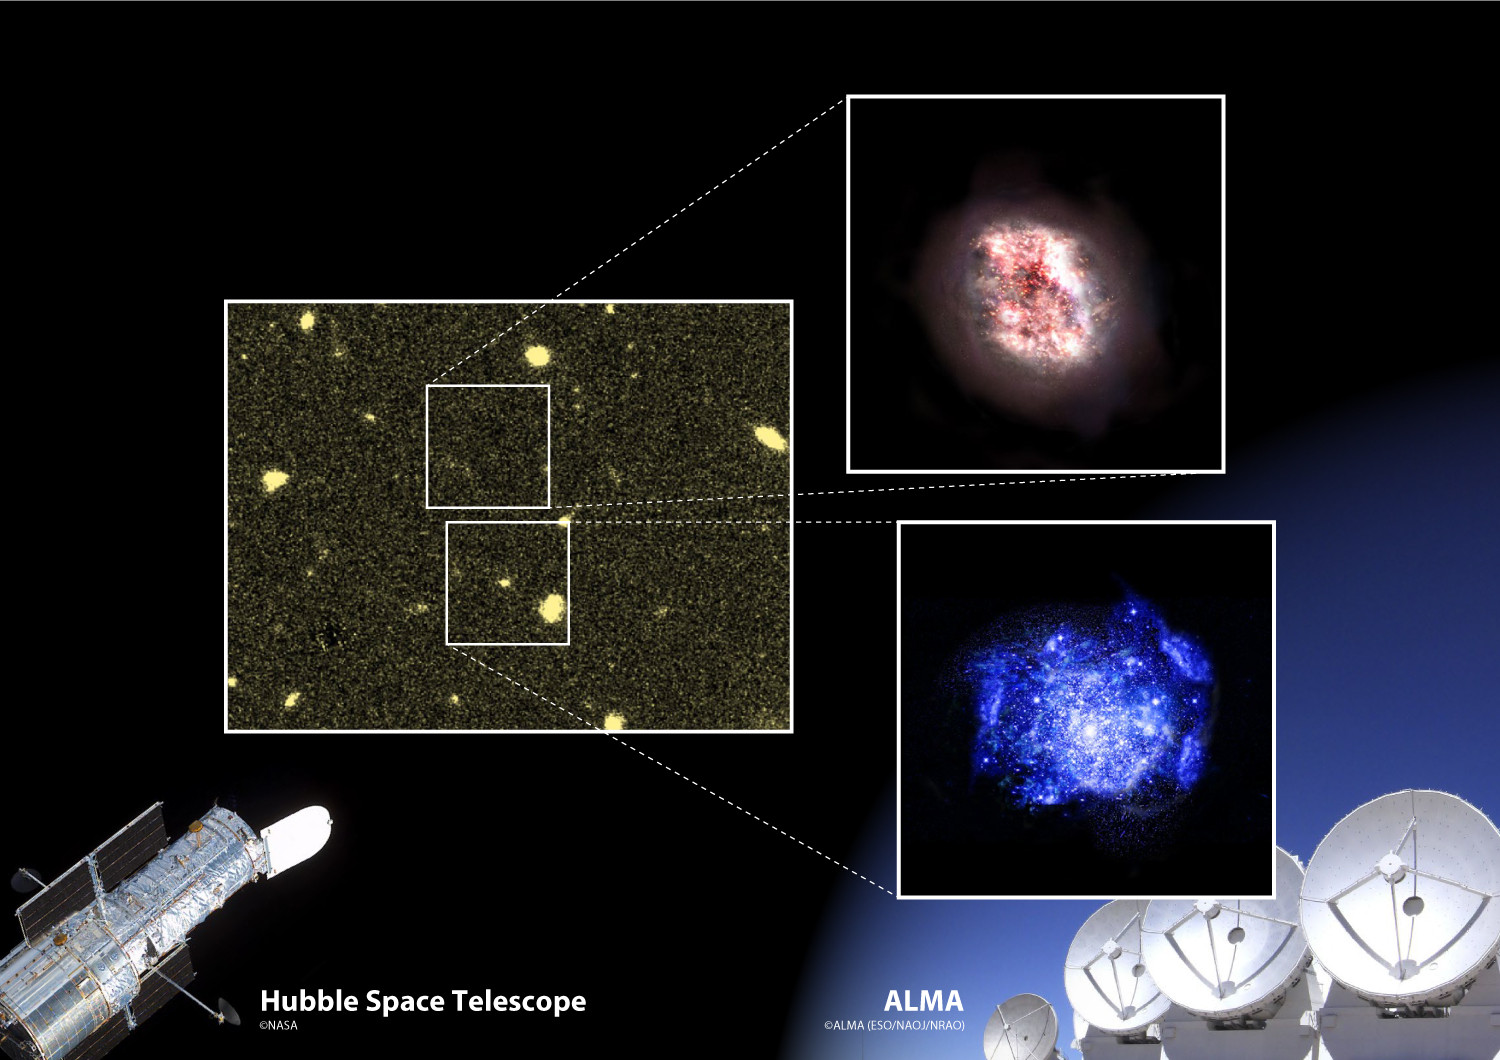 <p>Un esquema de los resultados de esta investigación. ALMA reveló una galaxia hasta ahora desconocida, ya que está enterrada profundamente en el polvo (impresión del artista en la parte superior derecha) en una región donde el Telescopio Espacial Hubble no podía ver nada (izquierda). Los investigadores descubrieron por casualidad la nueva galaxia oculta mientras observaban una galaxia joven típica ya conocida (impresión del artista en la esquina inferior derecha) Crédito: ALMA (ESO / NAOJ / NRAO), NASA / ESA Hubble Space Telescope</p>
